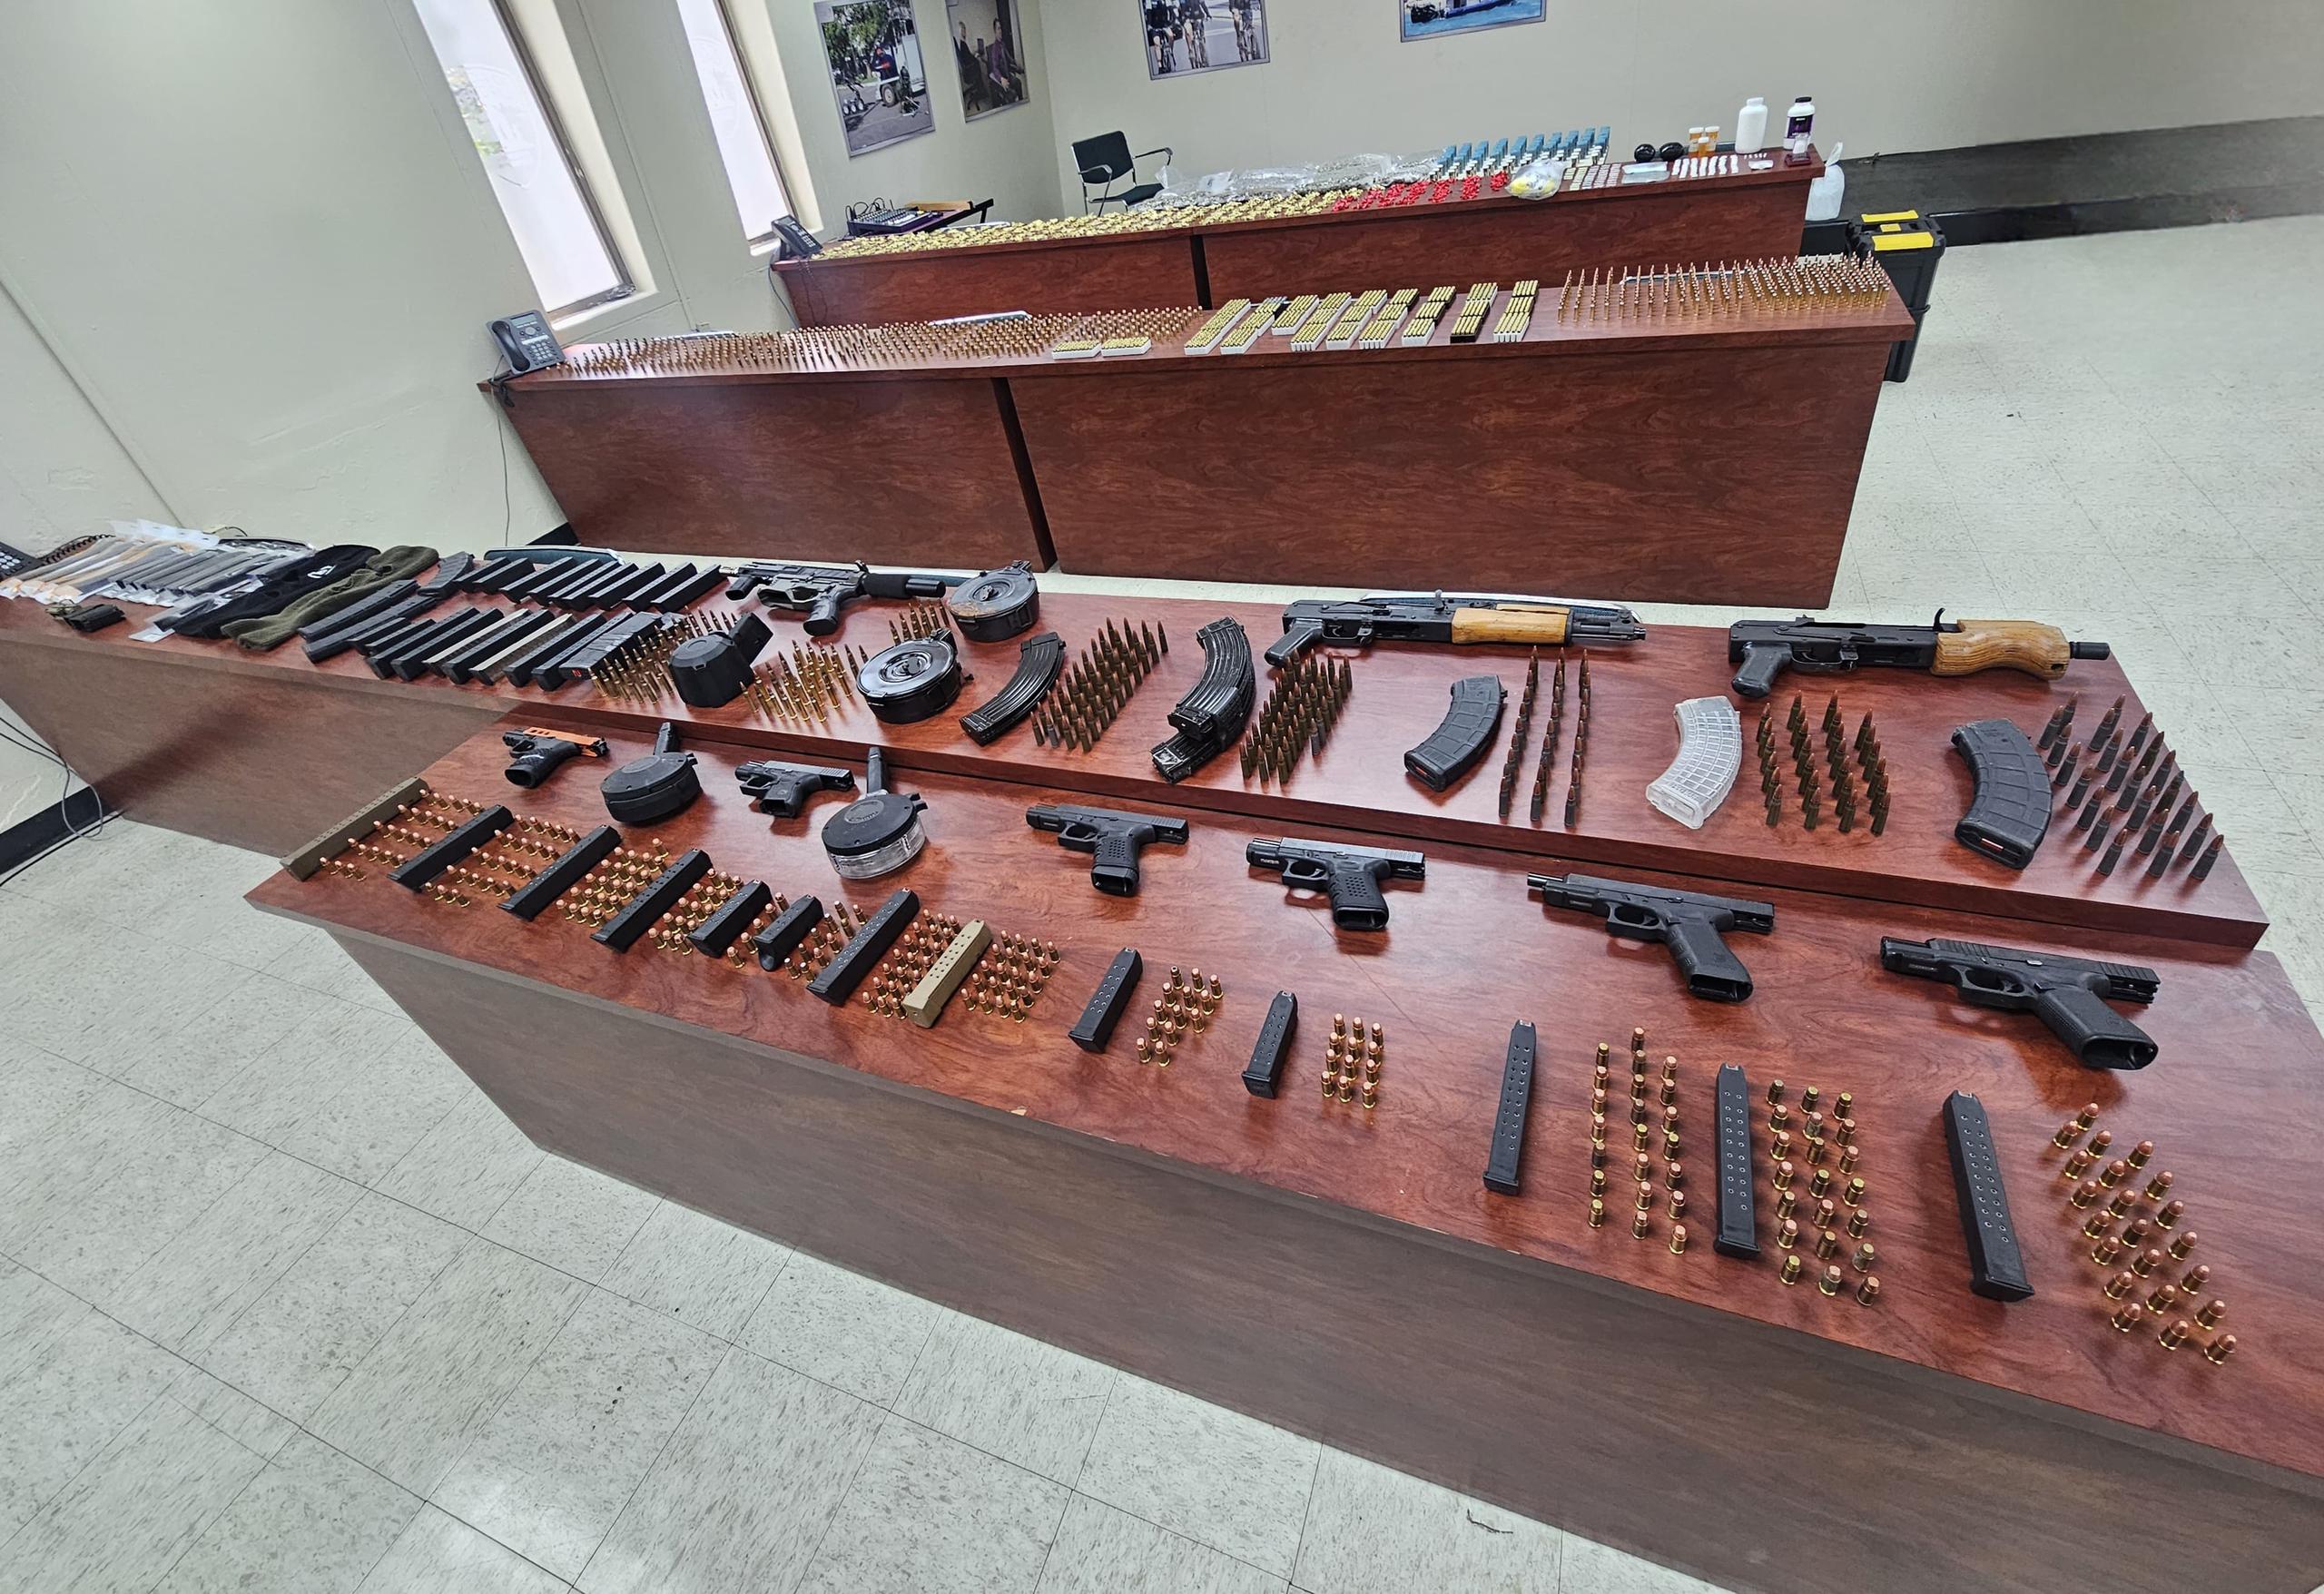 Armas de fuego ilegales, decenas de cargadores, más de mil municiones y una gran cantidad de drogas ocupados en un apartamento deshabitado del residencial El Trébol, en Río Piedras.